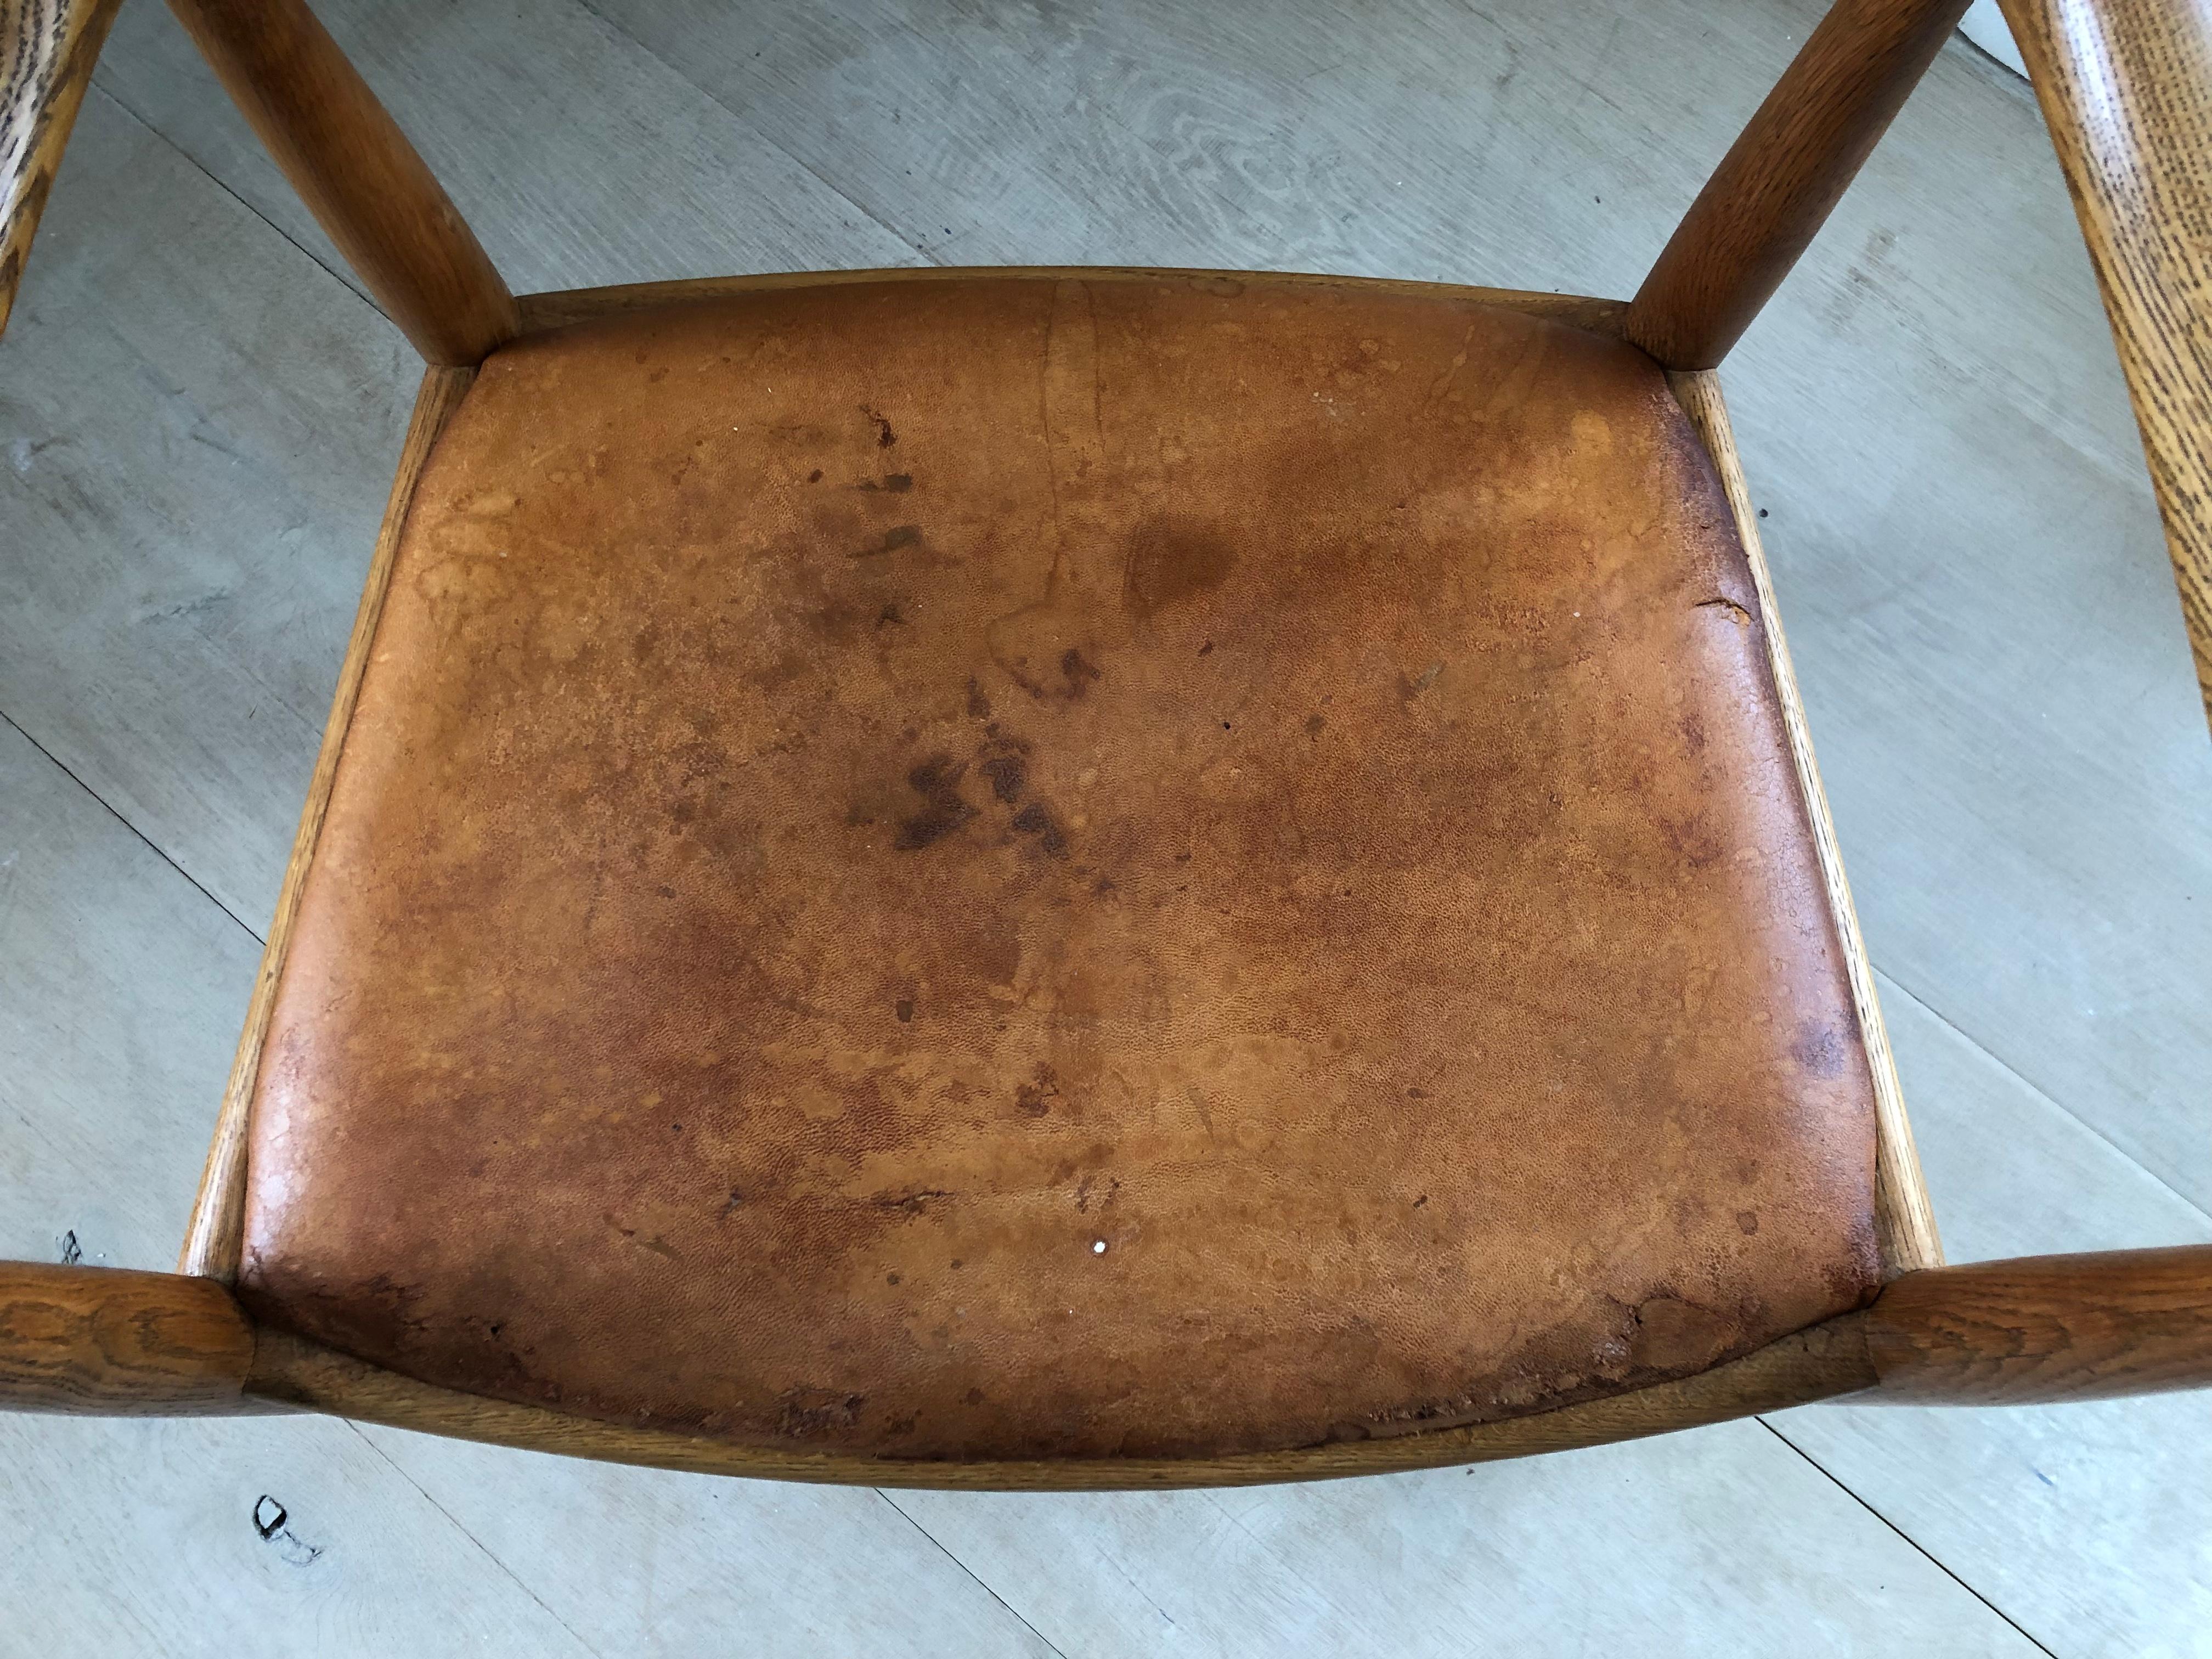 Cette chaise est un excellent exemple vintage de la chaise ronde de Wegner en chêne. Le Label indique qu'il a été fabriqué avant 1970. 

Le cuir du siège présente des traces de décollement, d'usure et de déchirure à la surface, comme le montrent